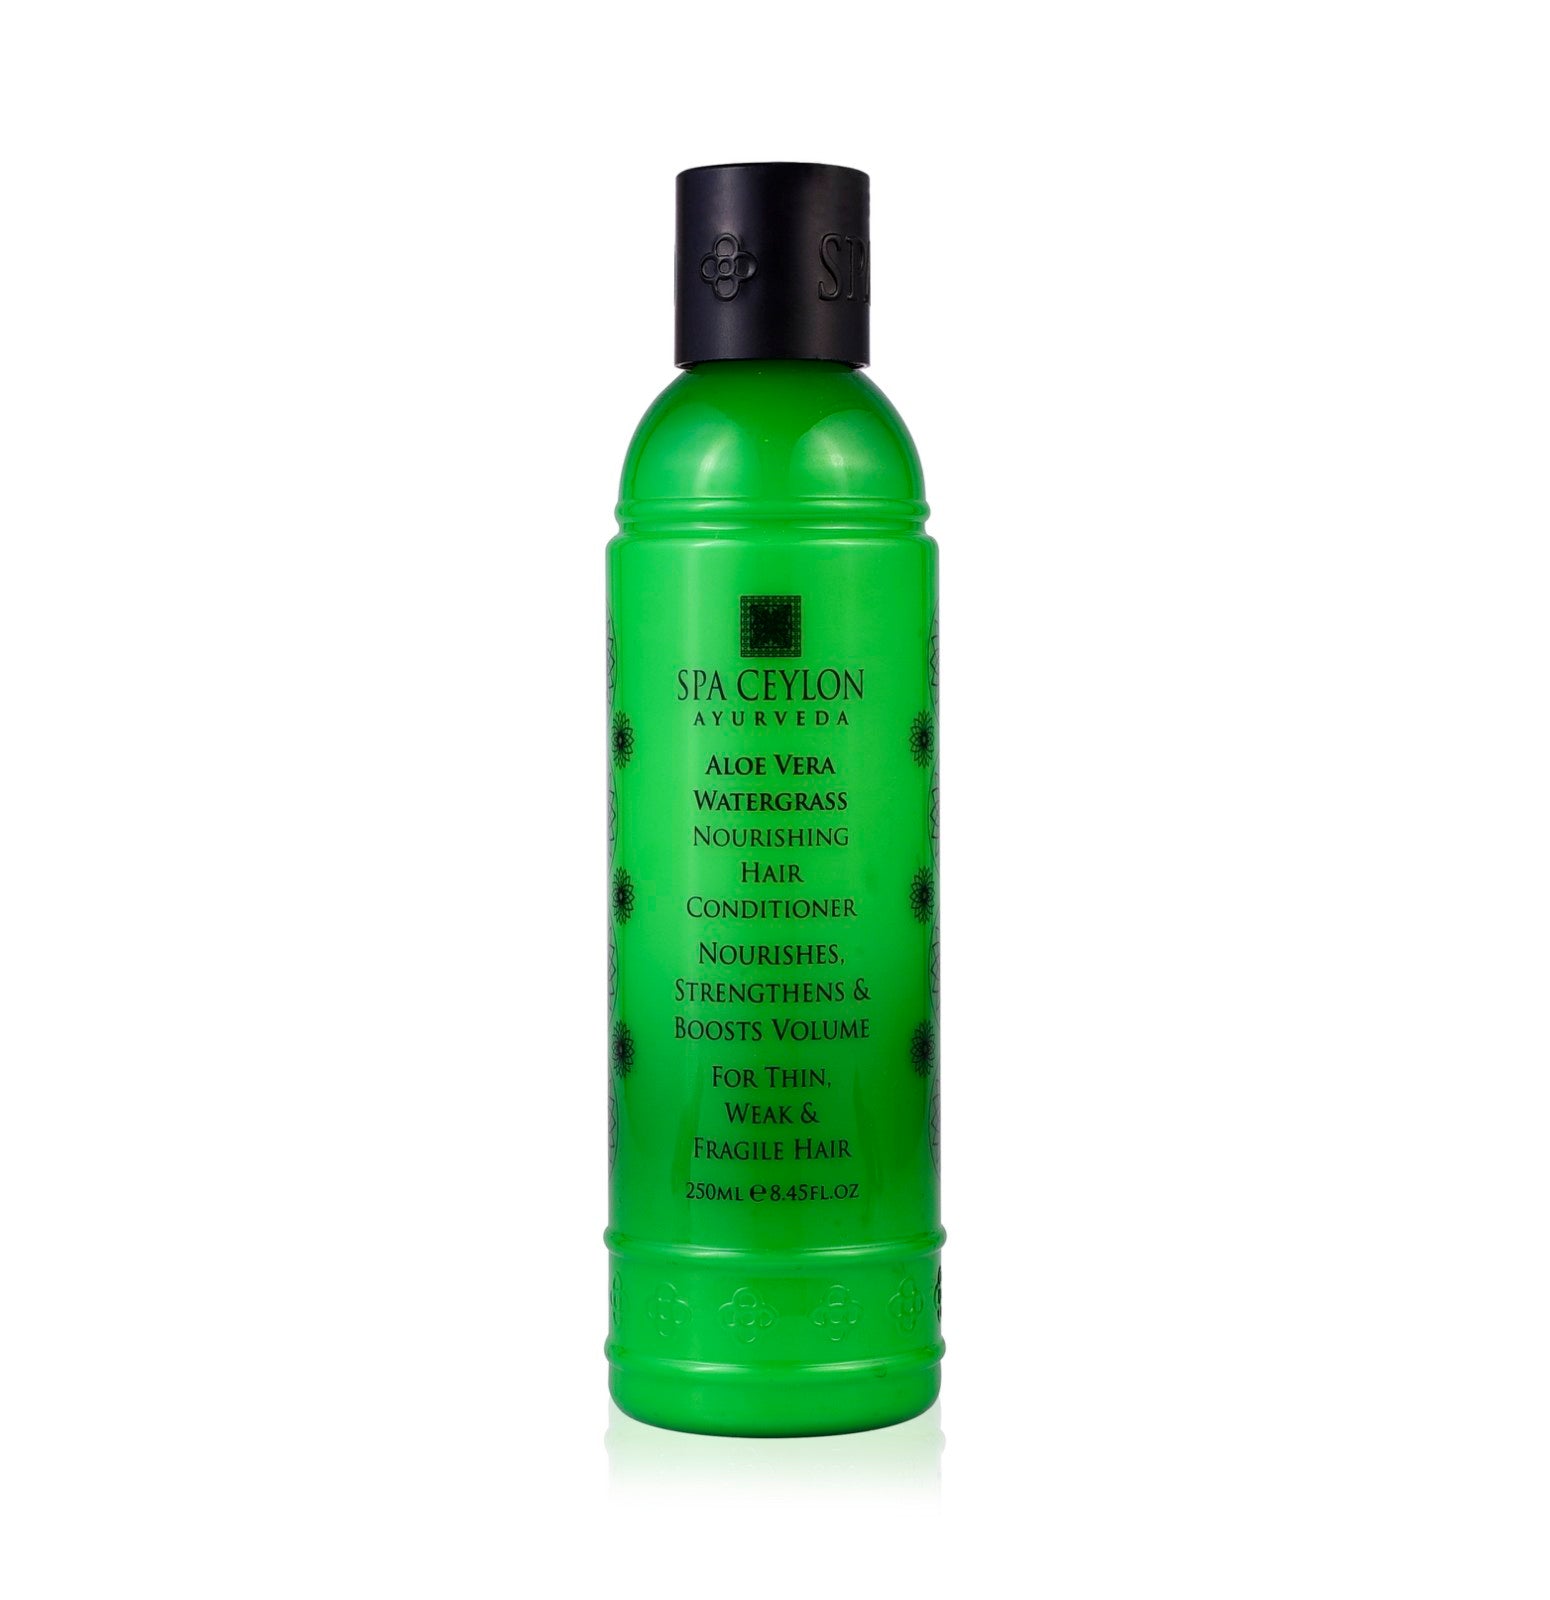 Aloe Vera Watergrass - Nourishing Hair Conditioner - 250ml